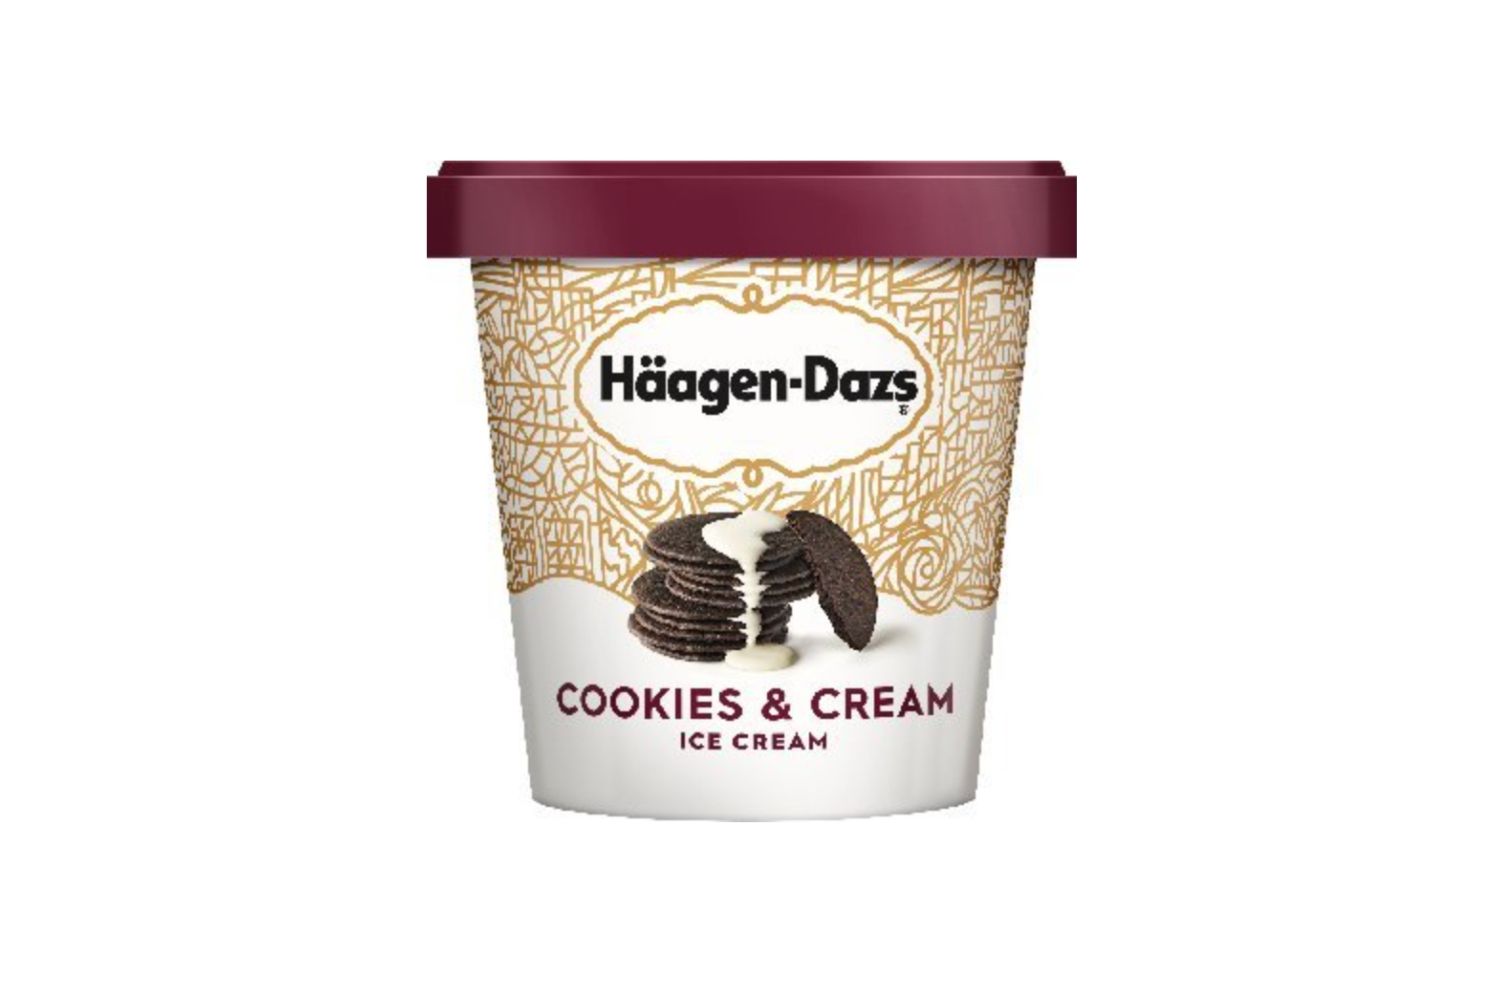 El helado Häagen-Dazs de Cookies & Cream